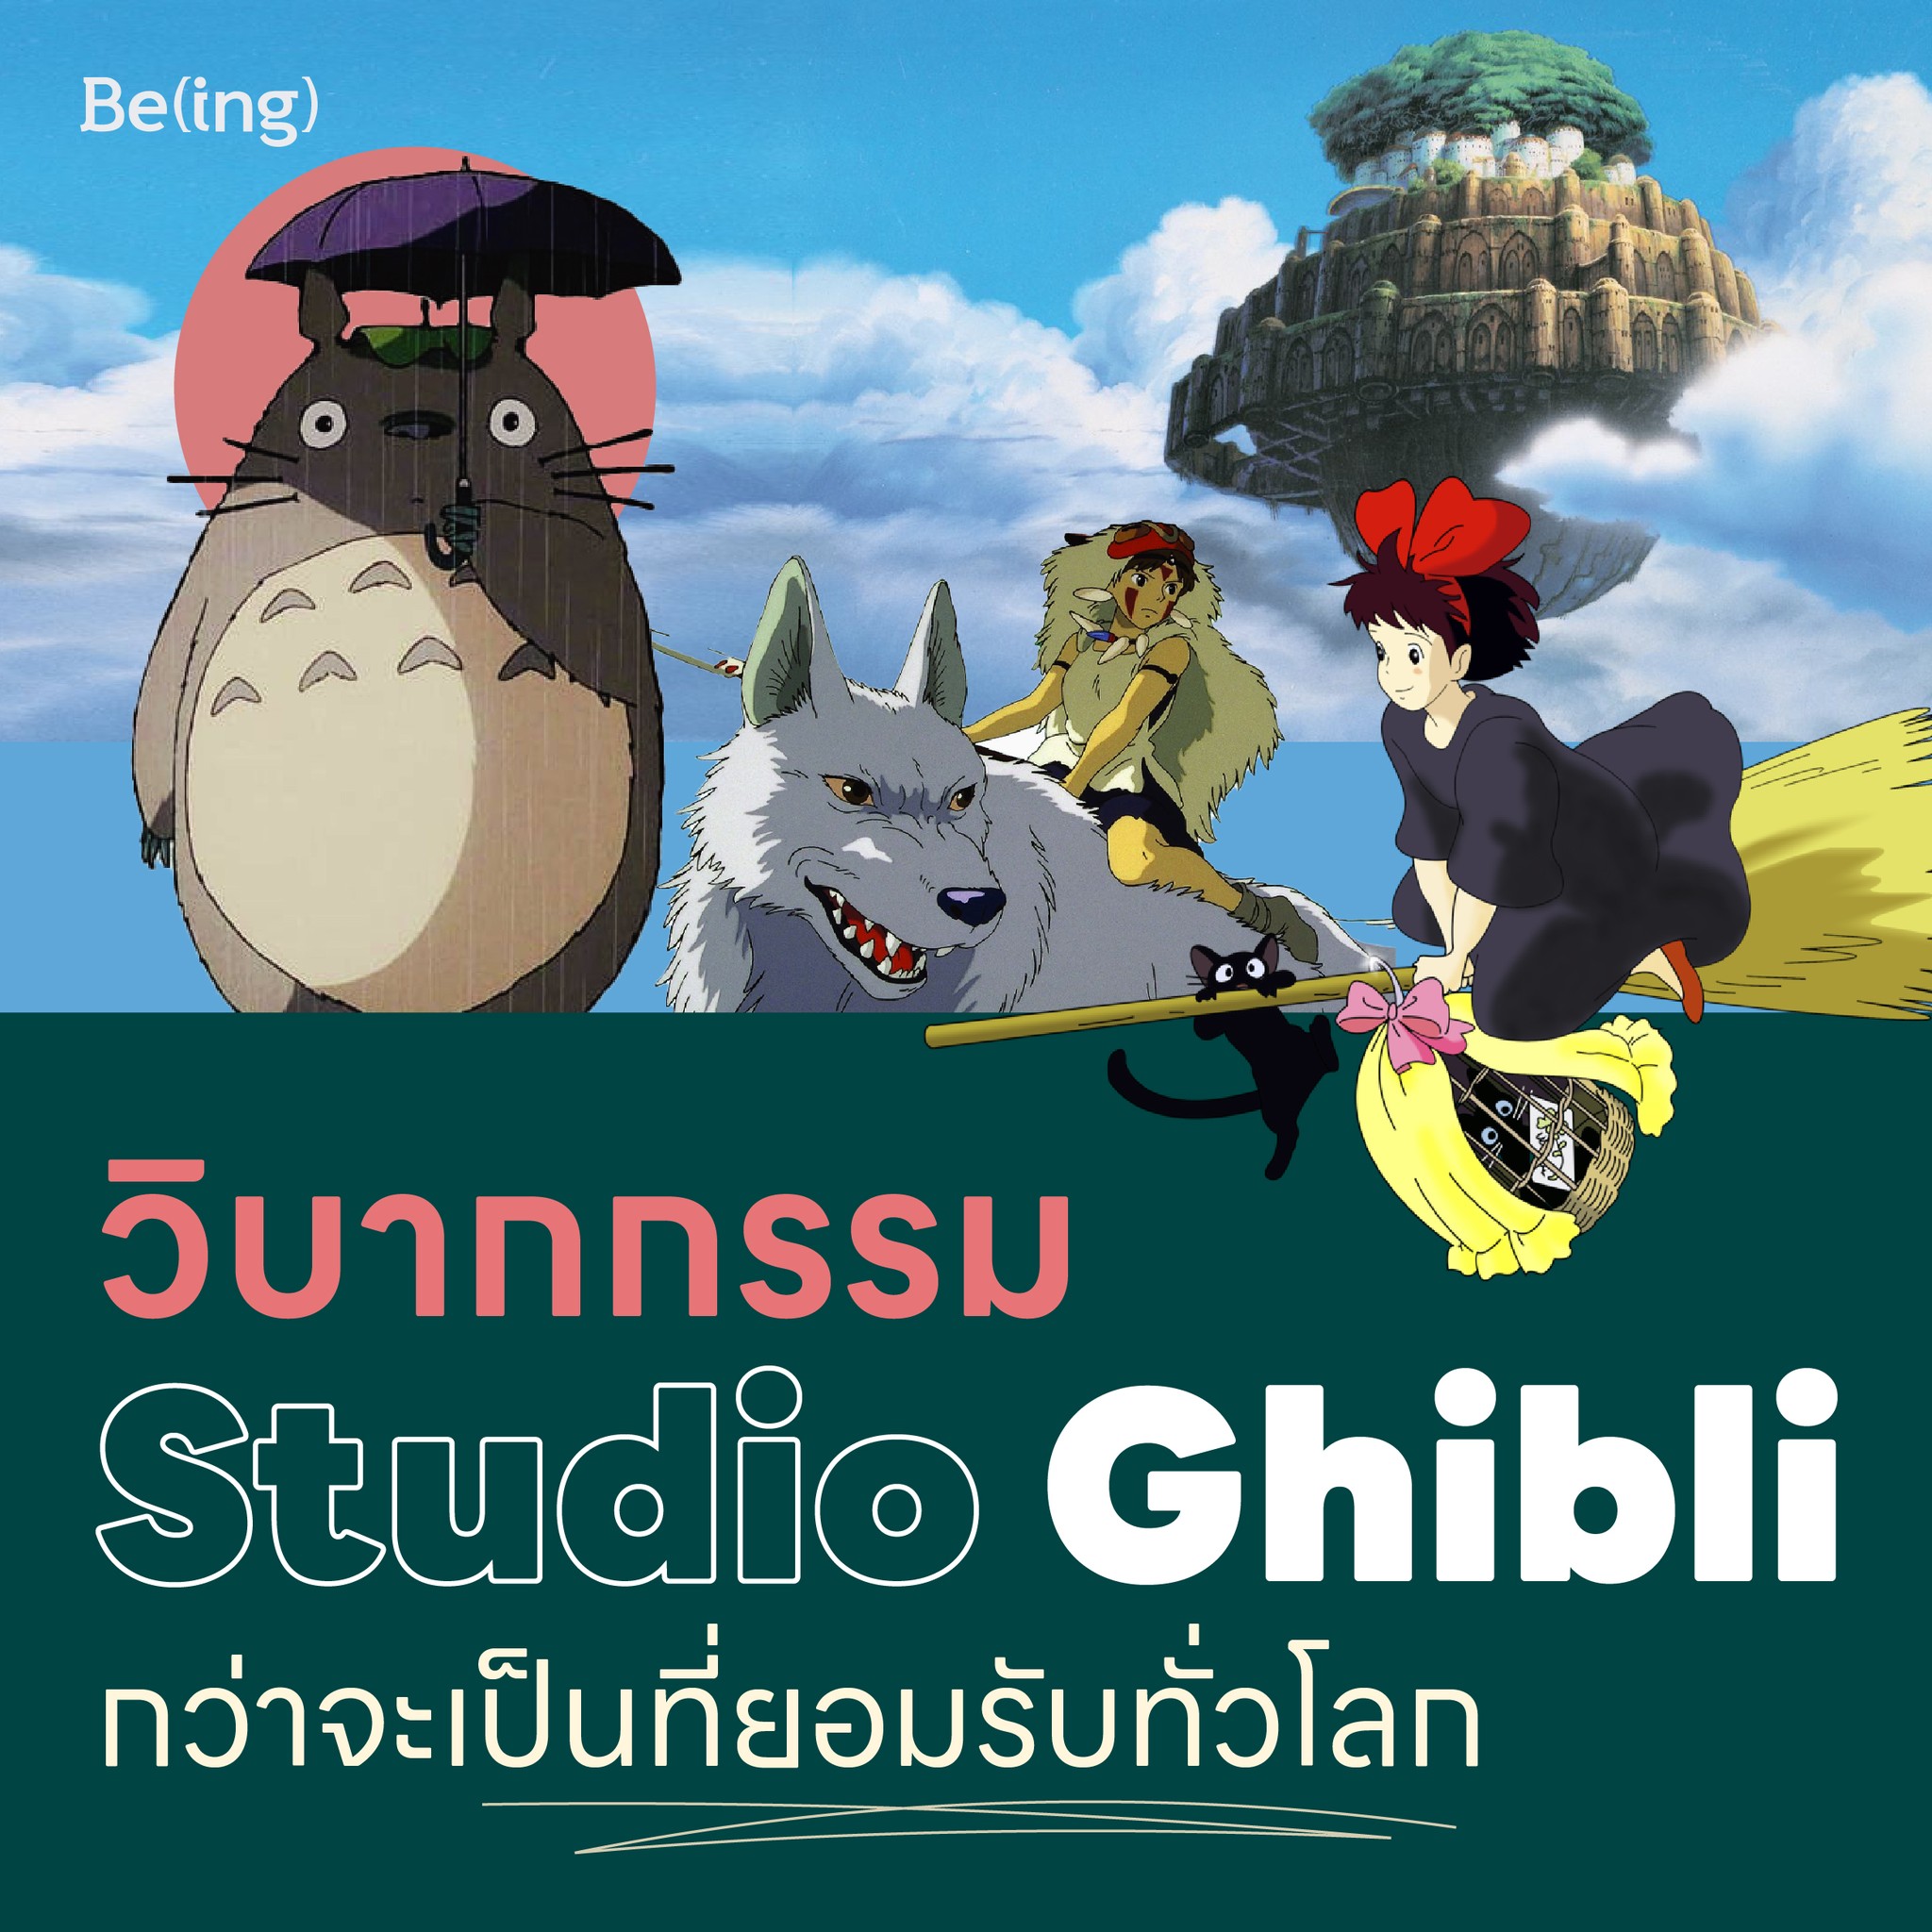 5 วิบากกรรมของ Studio Ghibli กว่าจะเป็นที่ยอมรับของคนทั่วโลก